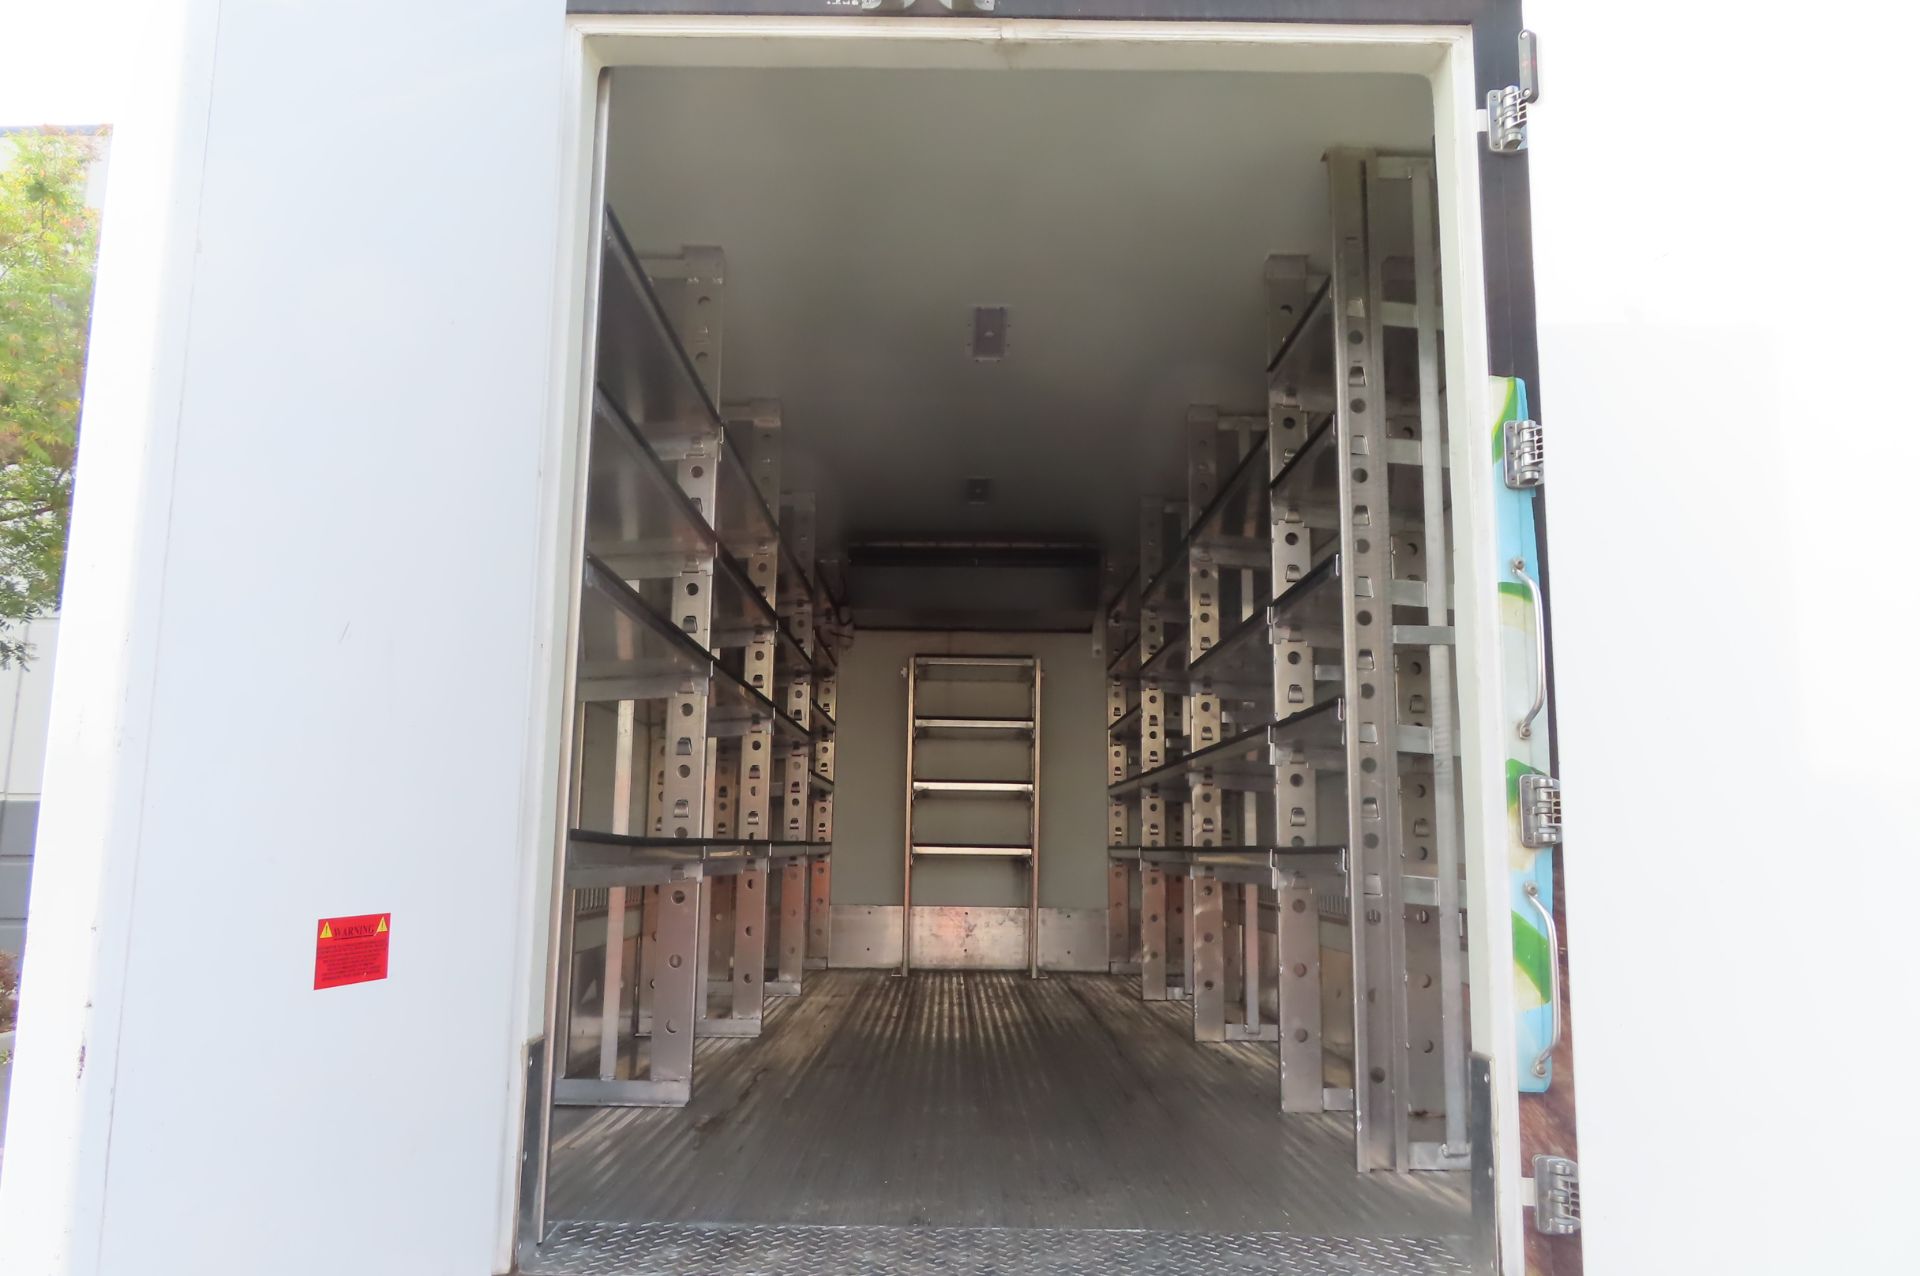 2019 Isuzu refrigerated truck - Image 5 of 10